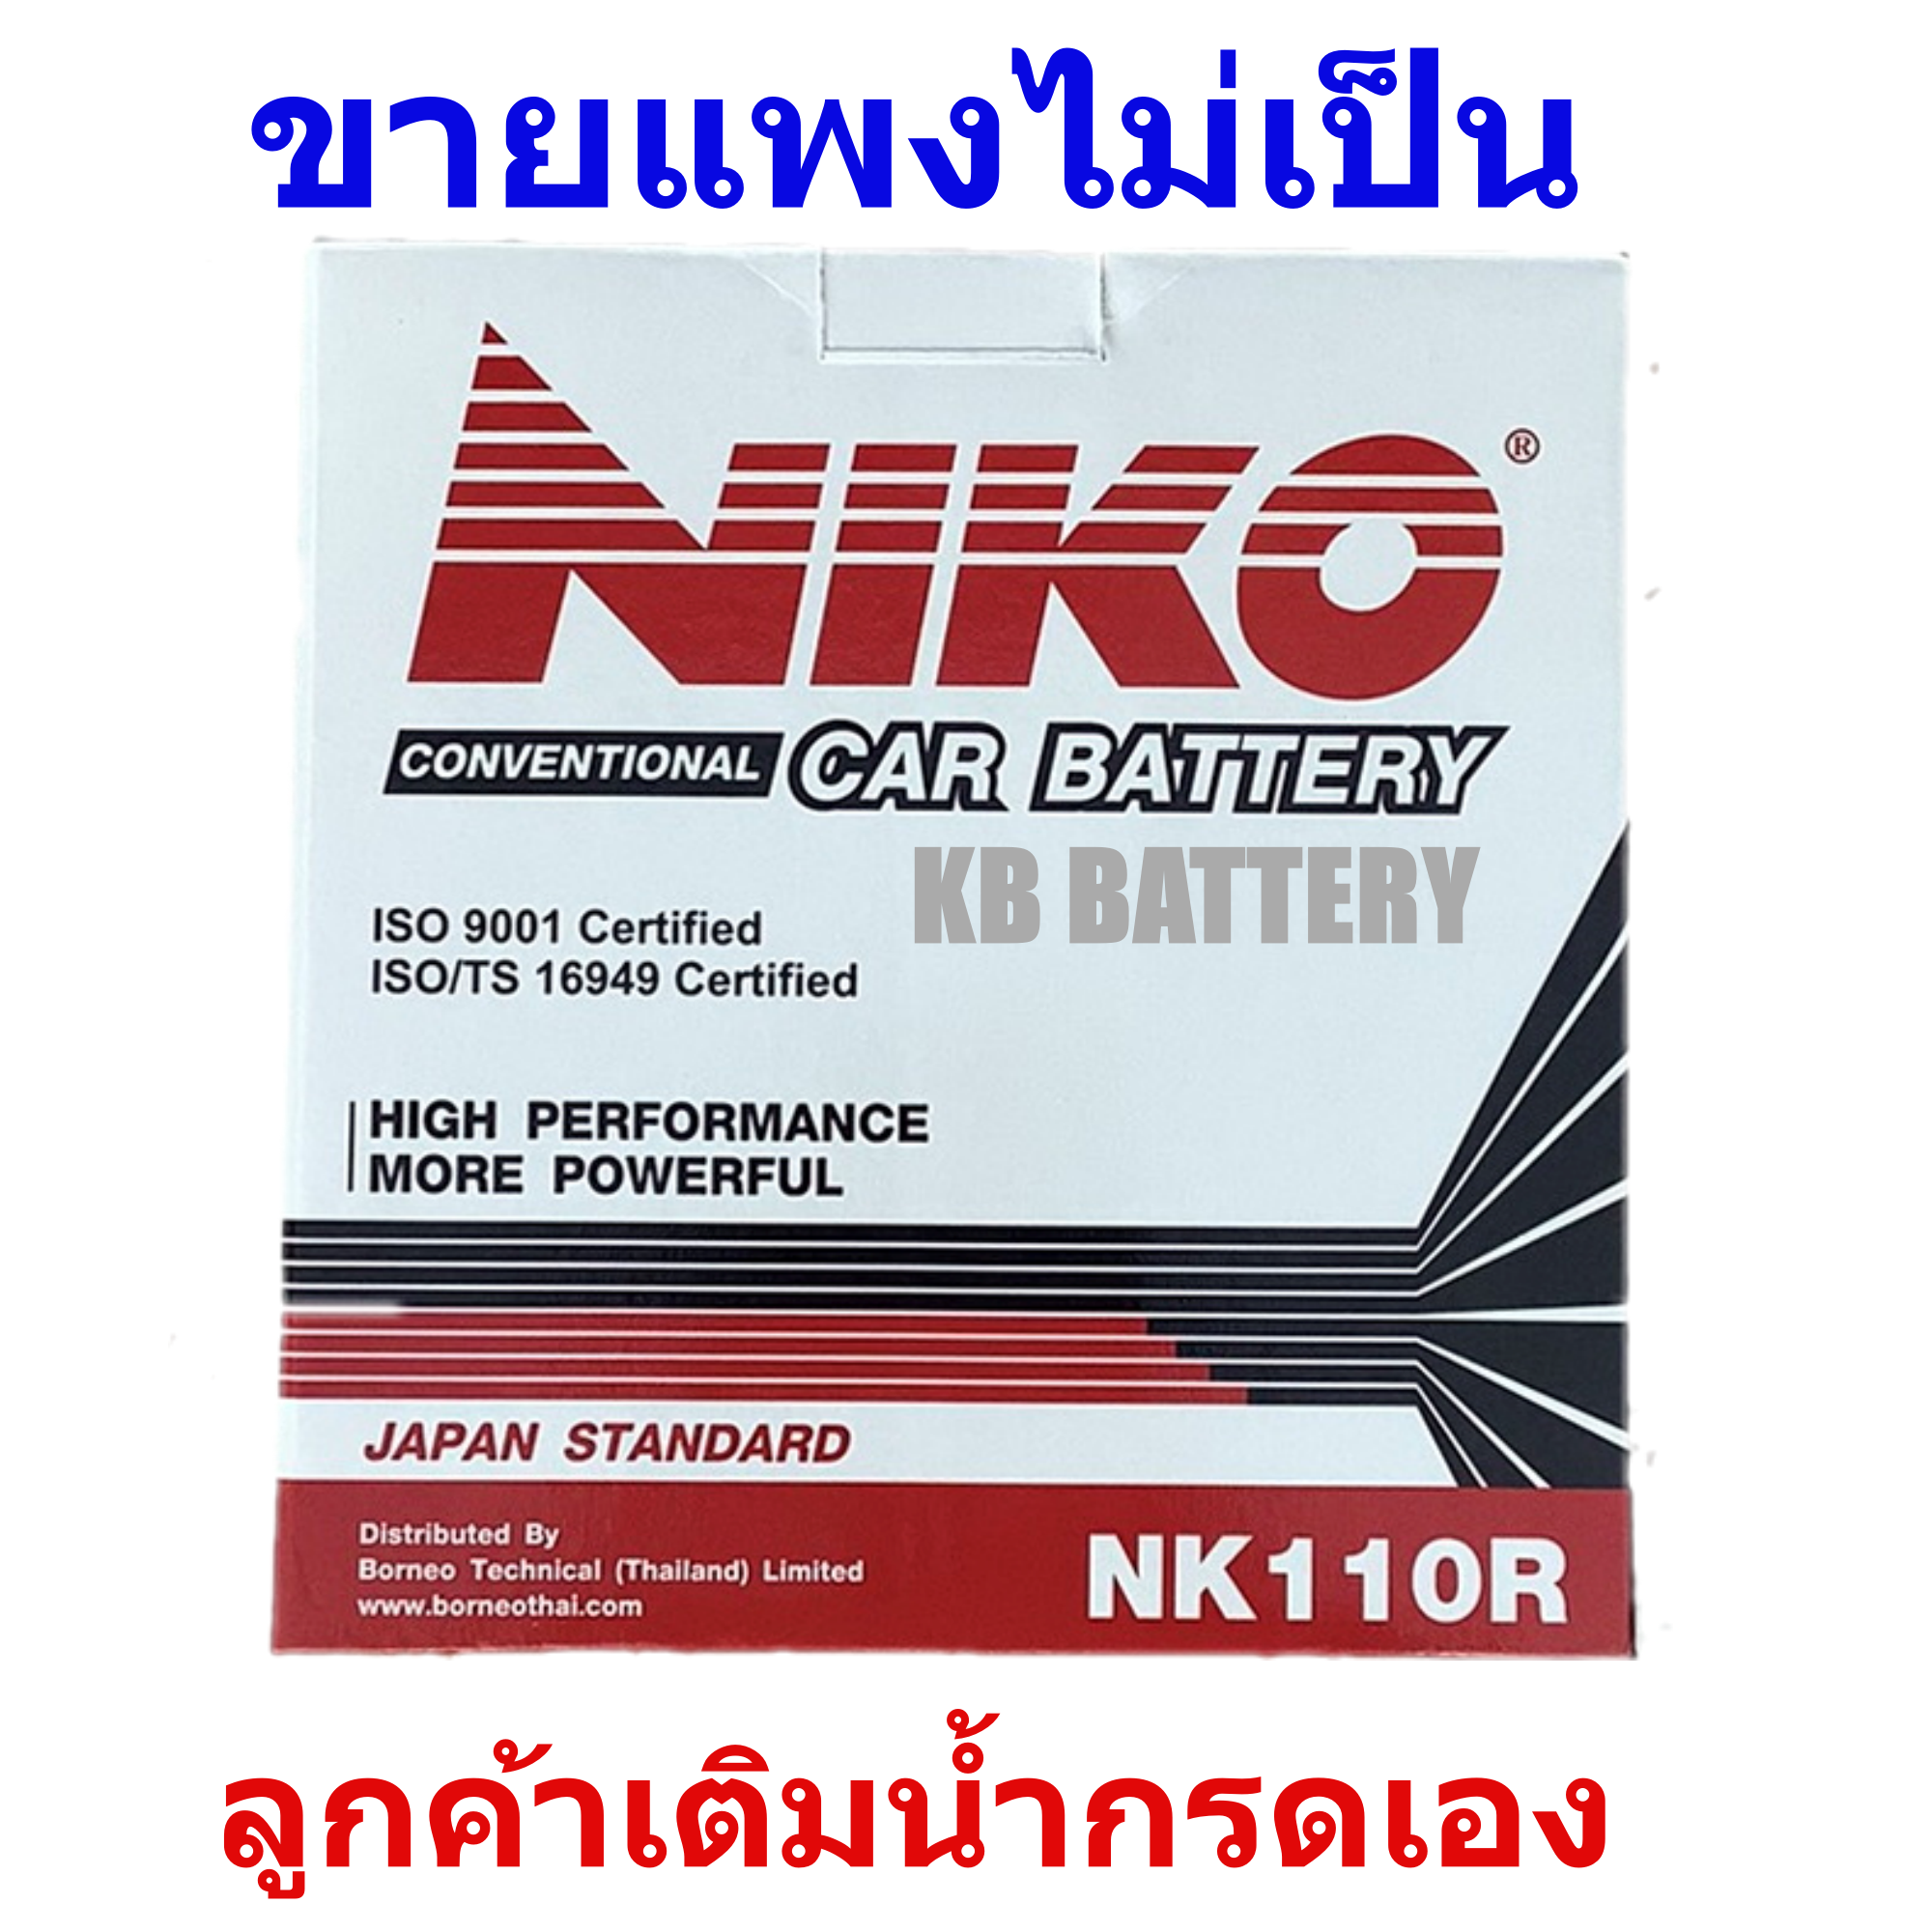 Niko NK110R (NS60) ,ความจุ 45 แอมป์/แรงสตาร์ท 340 แอมป์ ,ยxกxส=236x128x202 ม.ม. ,Niko NK110R ,Niko NS60 ,Niko Battery ,แบตเตอรี่นิโก้ ,แบตเตอรี่รถยนต์ ,ให้แรงสตาร์ทสูง ,แบตเตอรี่สำรองไฟ ,แบตเตอรี่ให้แสงสว่าง ,คุ้มค่า-ราคาประหยัด